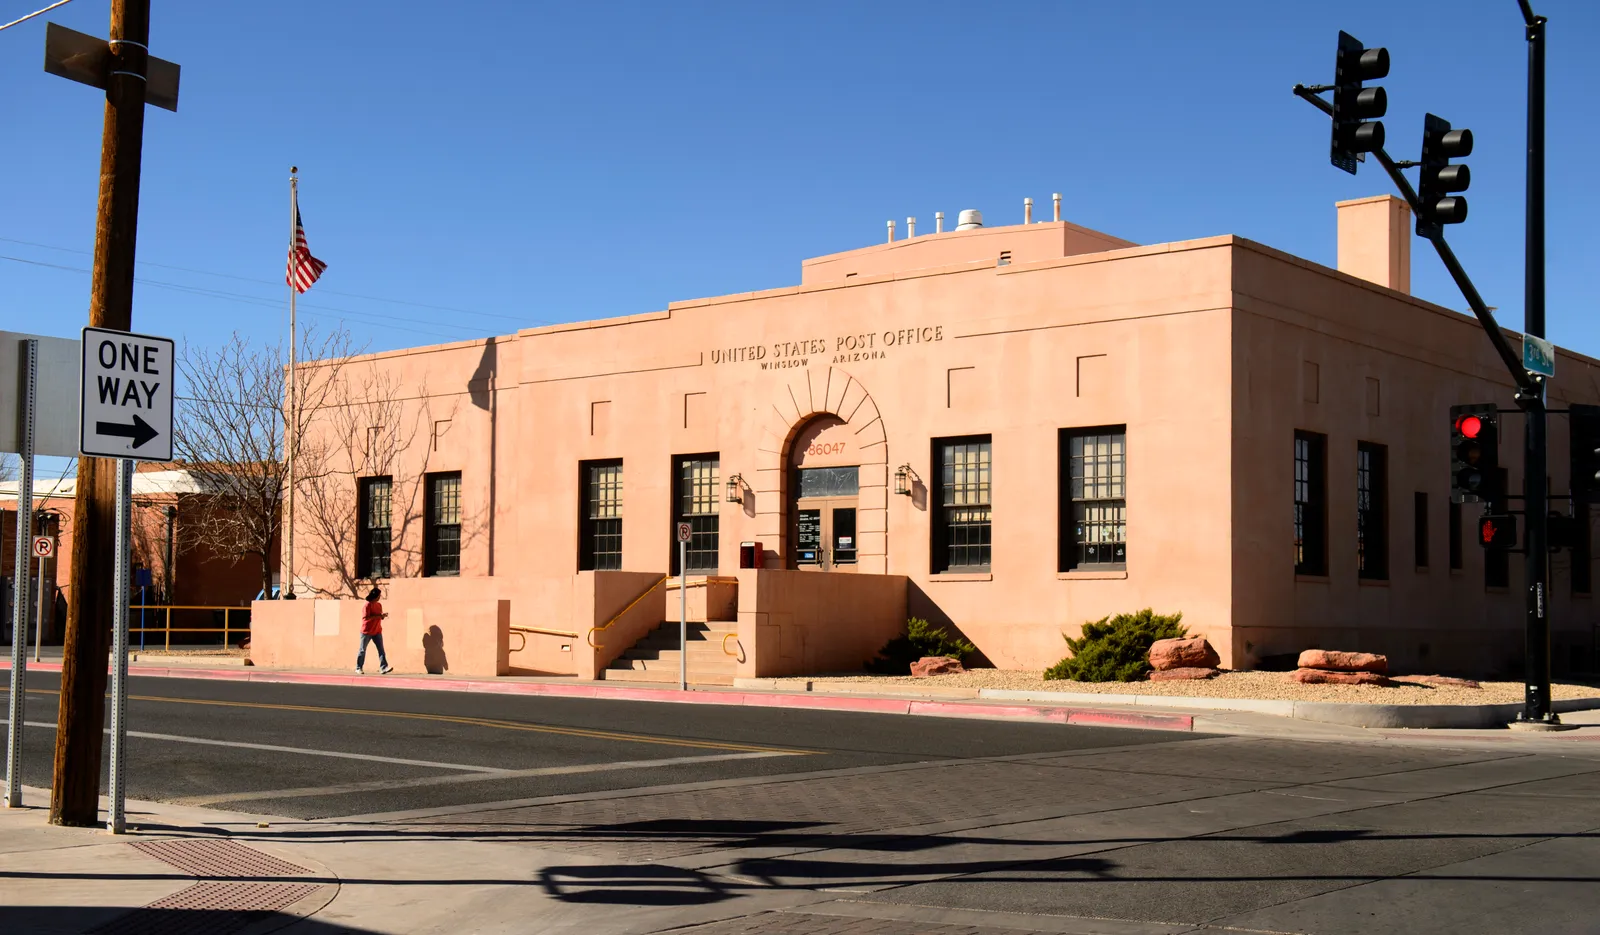 Winslow, Arizona Louis A. Simon, kiến ​​trúc sư của bưu điện lấy cảm hứng từ gạch không nung này, đã cống hiến phần lớn sự nghiệp của mình cho các công trình công cộng. Làm việc tại Văn phòng Kiến trúc sư Giám sát của Bộ Tài chính Hoa Kỳ, ông đã làm việc trên nhiều tòa nhà đáng chú ý trên khắp đất nước, bao gồm tòa nhà IRS và Thư viện và Bảo tàng Tổng thống Franklin D. Roosevelt.